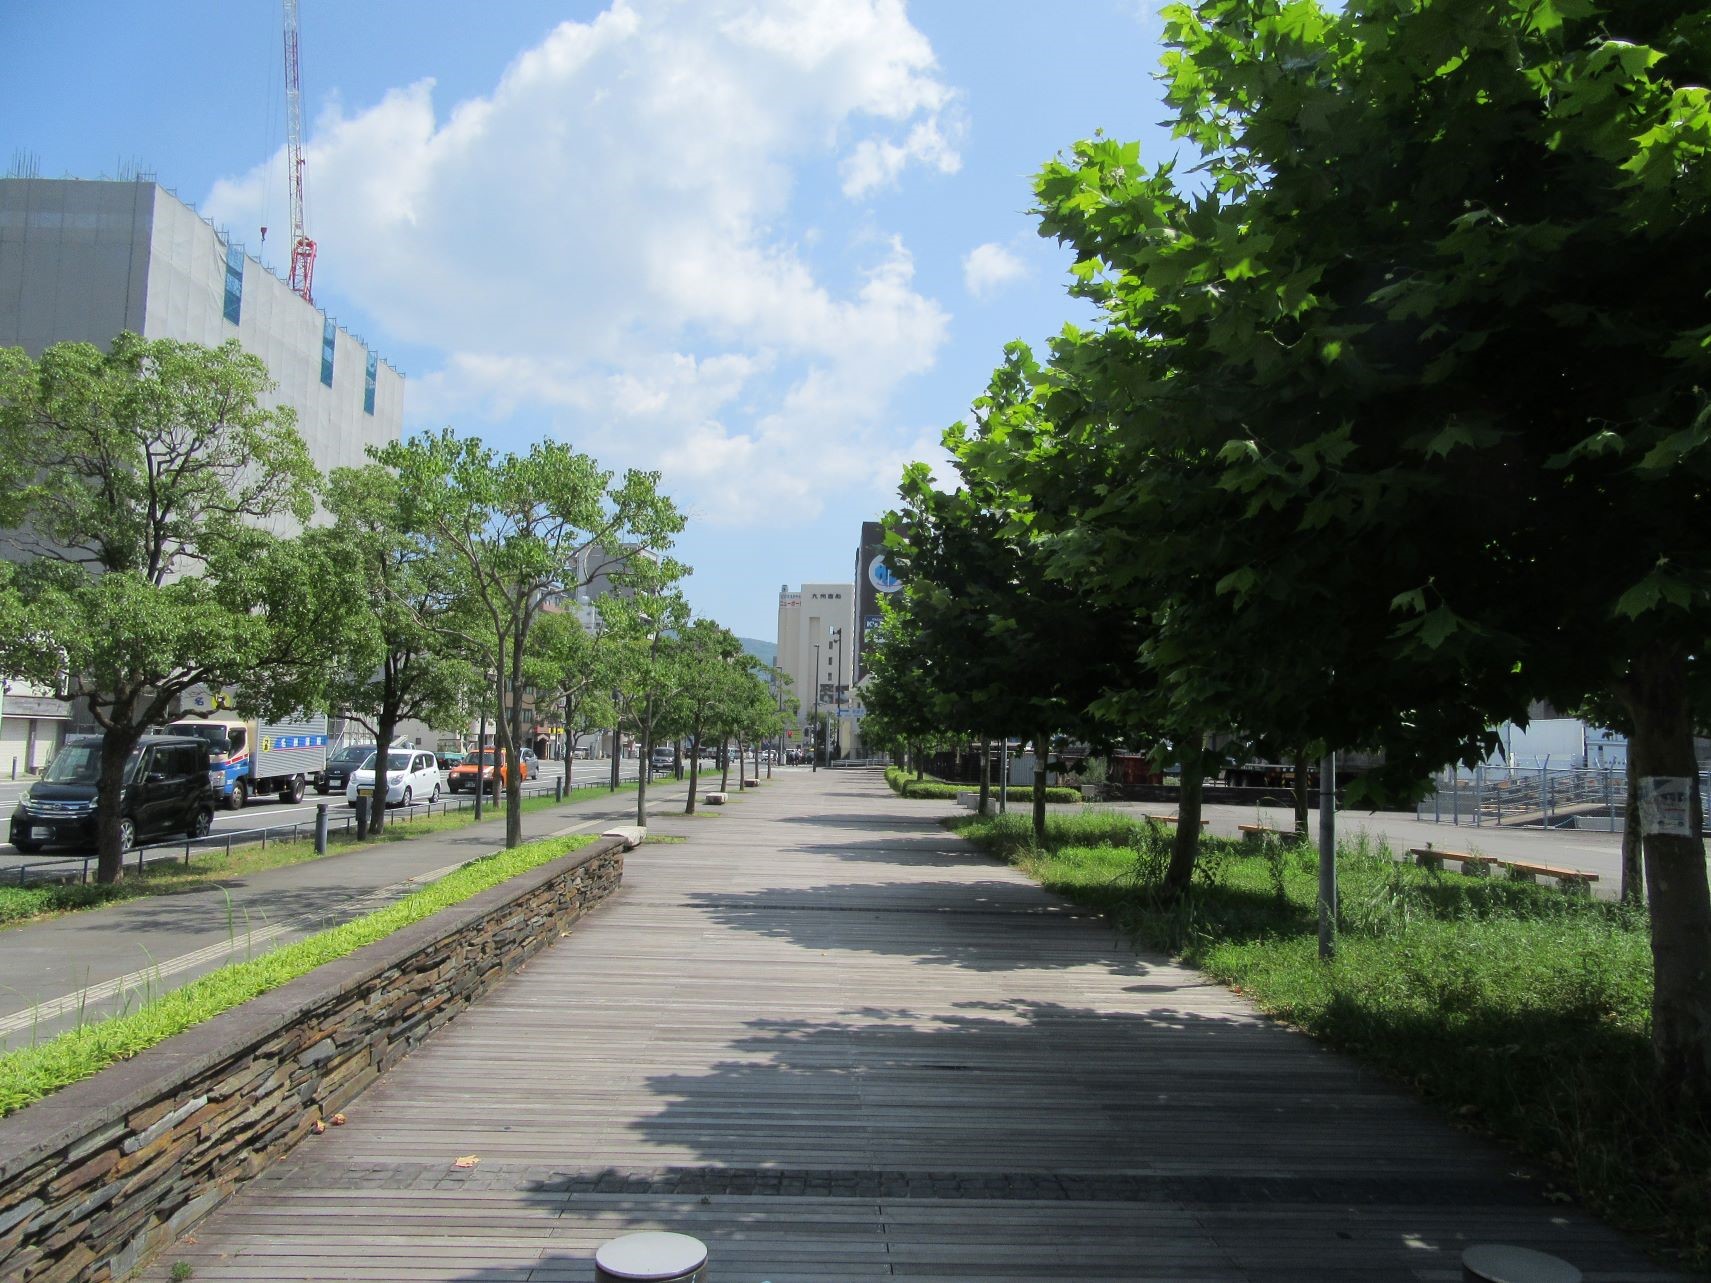 2023年7月26日撮影の、長崎市のプラタナス広場。